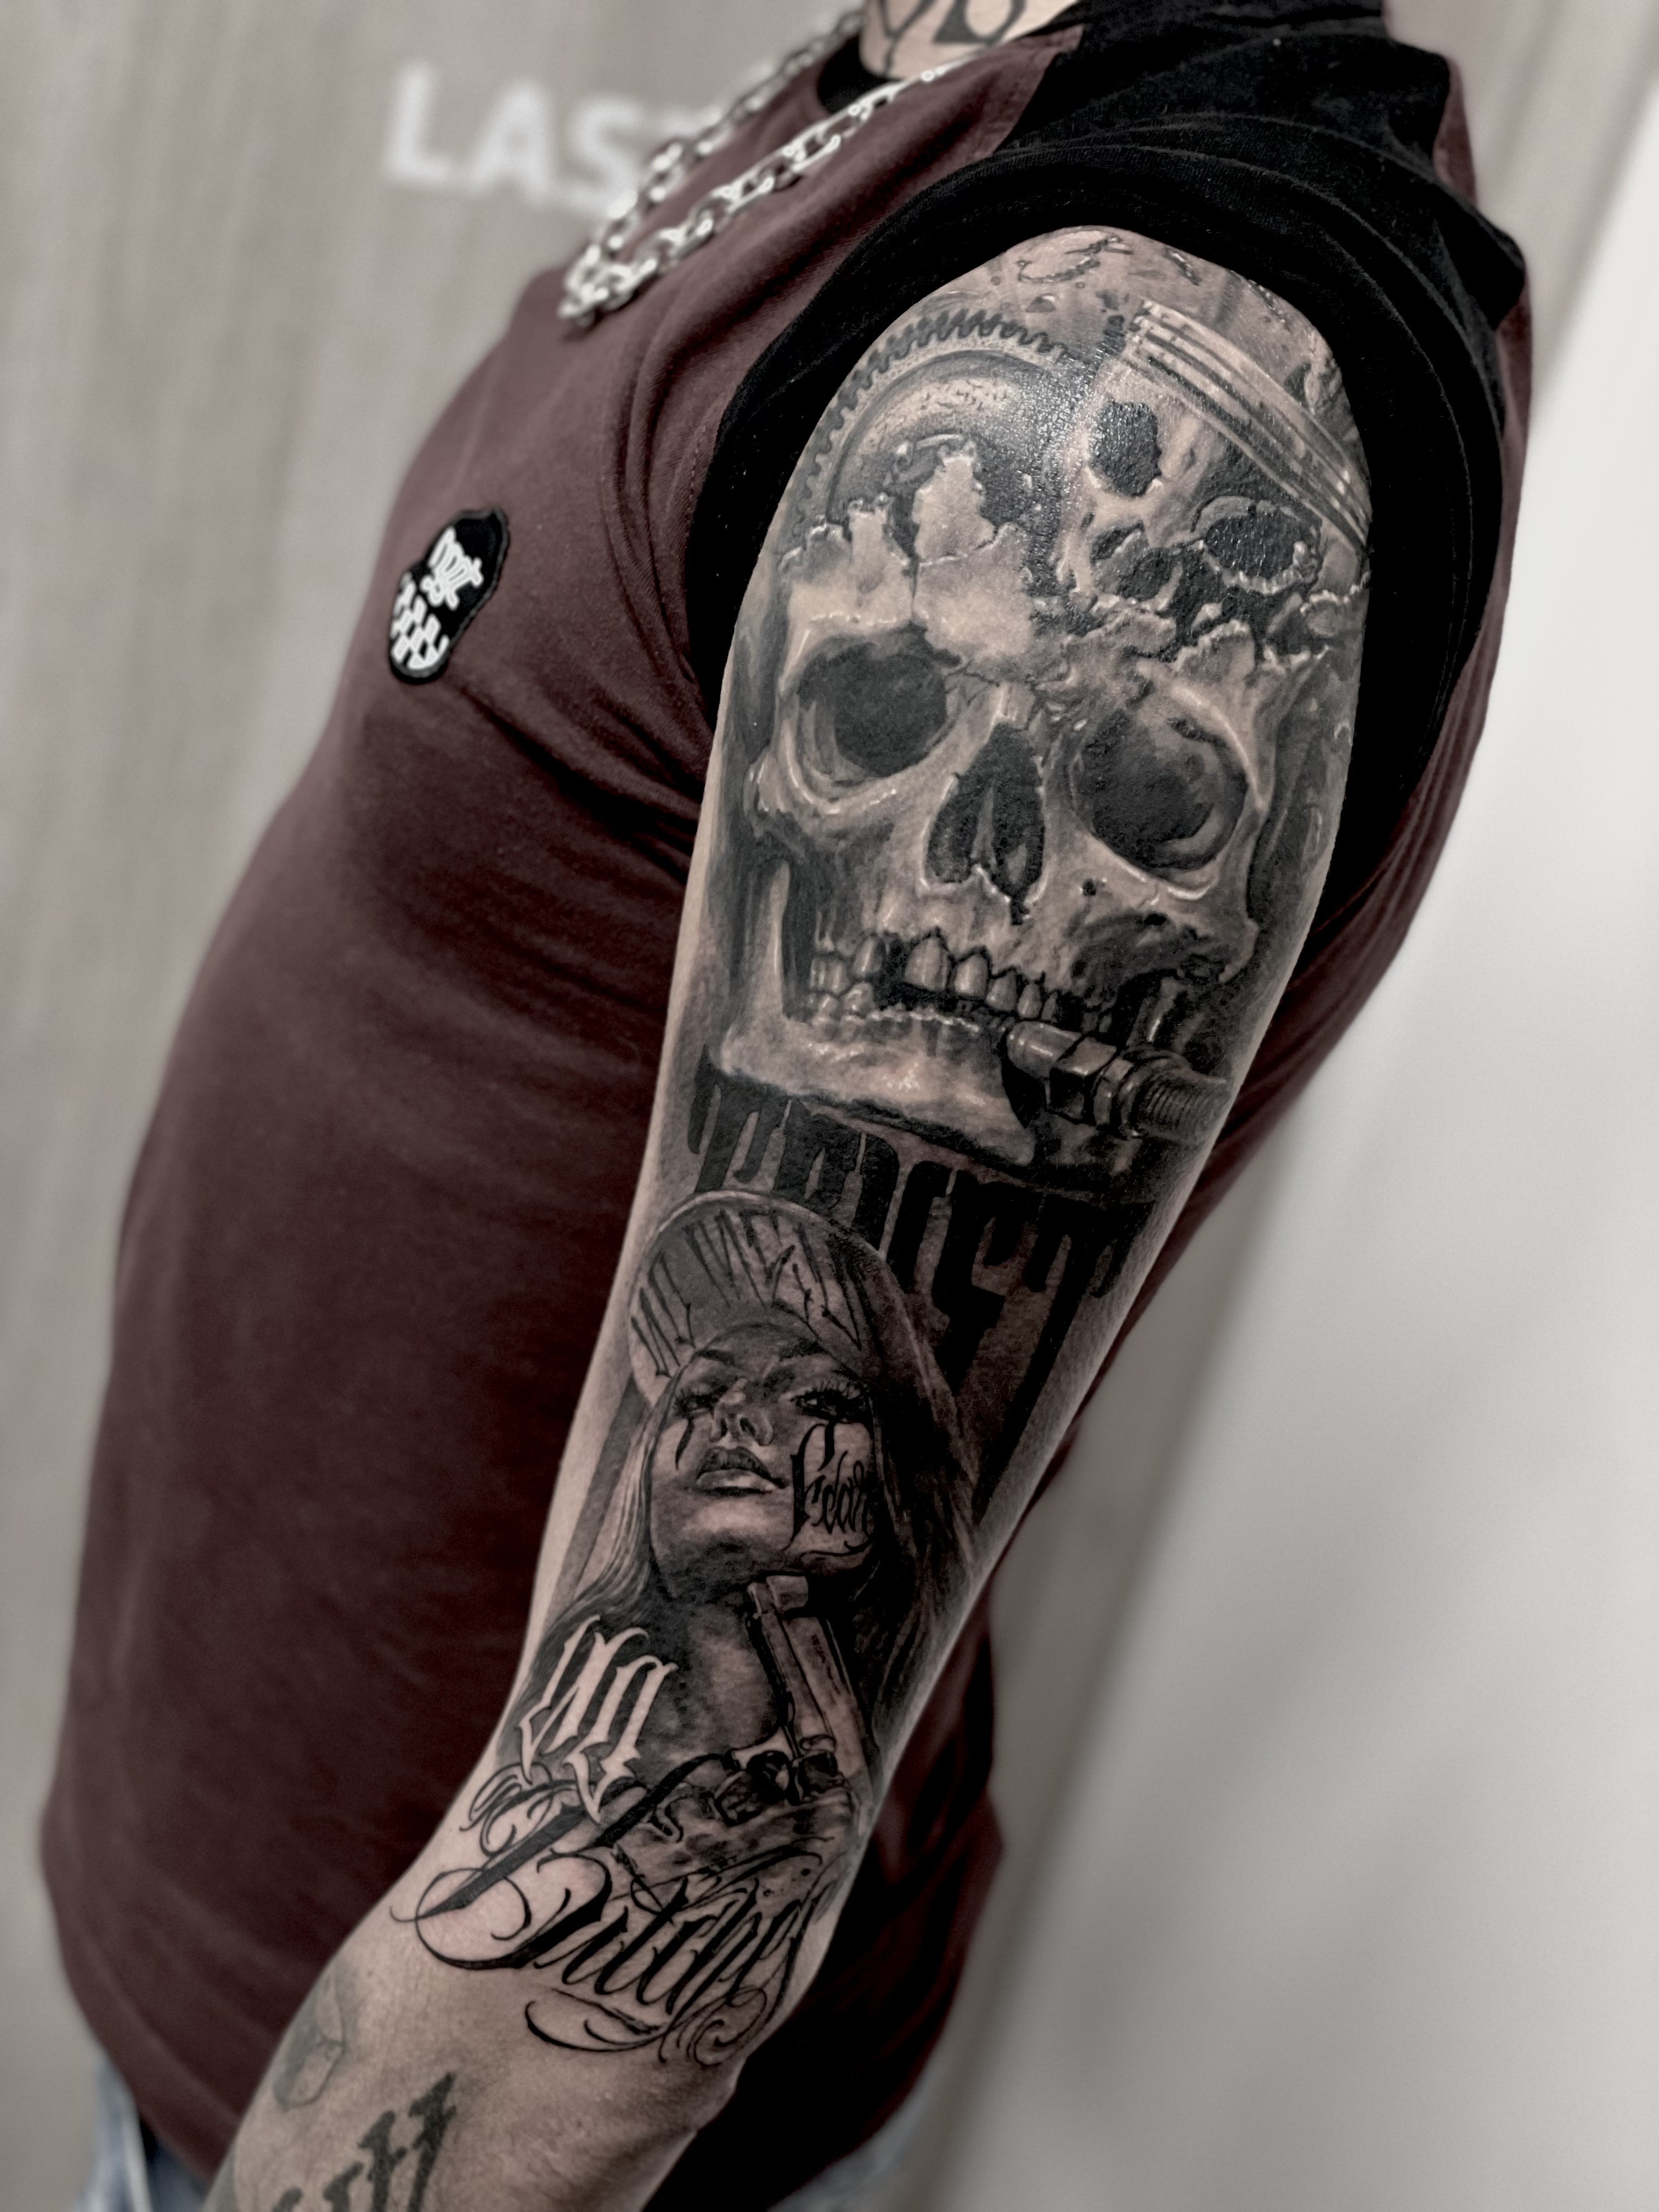 Single needle black and gray  Inkredible Ink Tattoo Katwijk